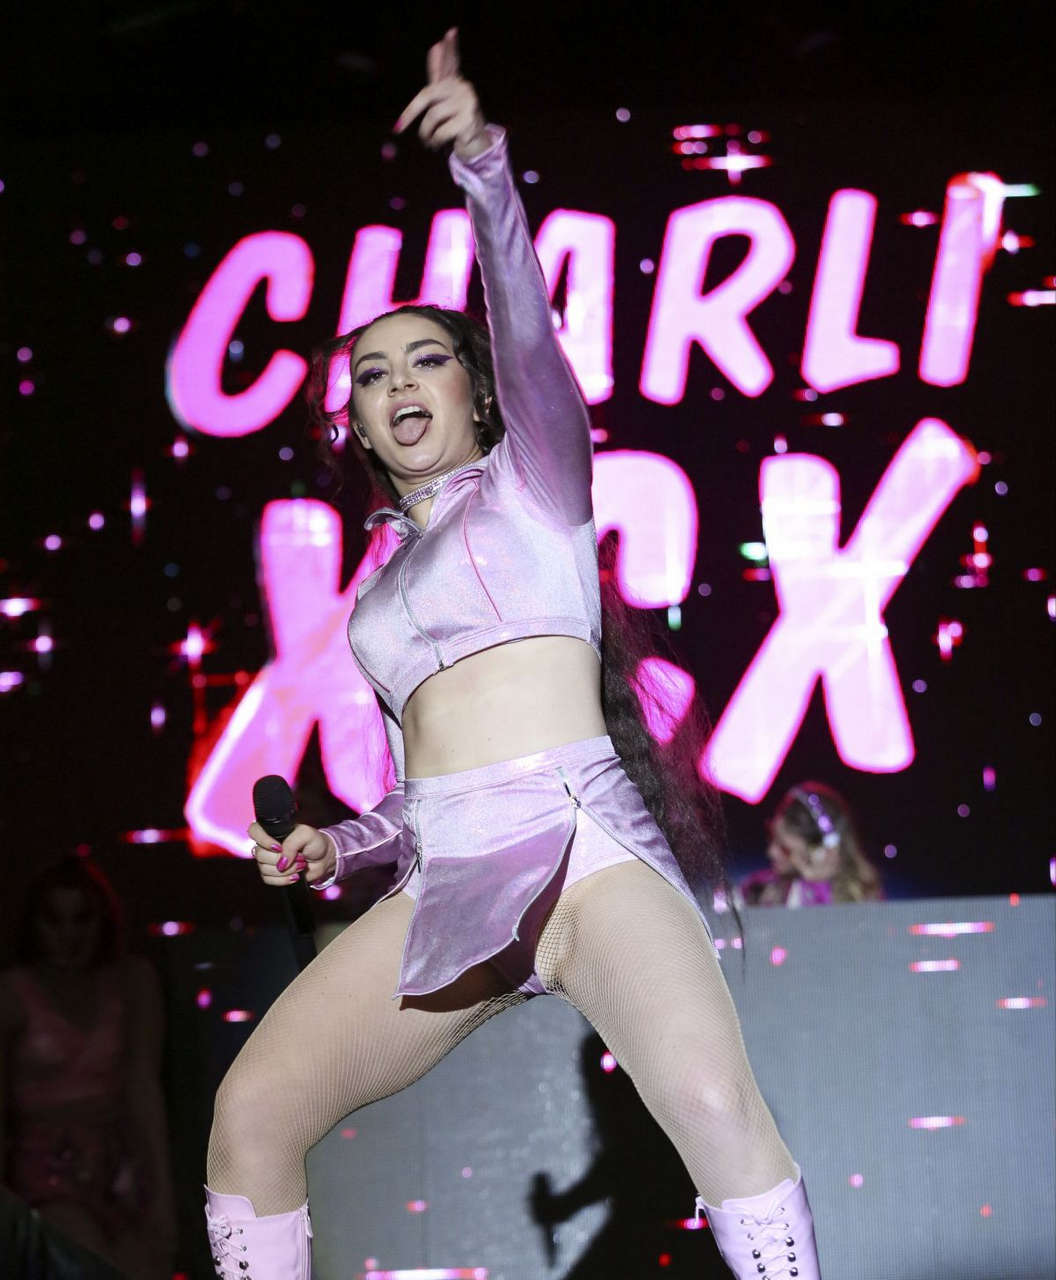 Charli Xcx La Pride Music Festival Los Angeles